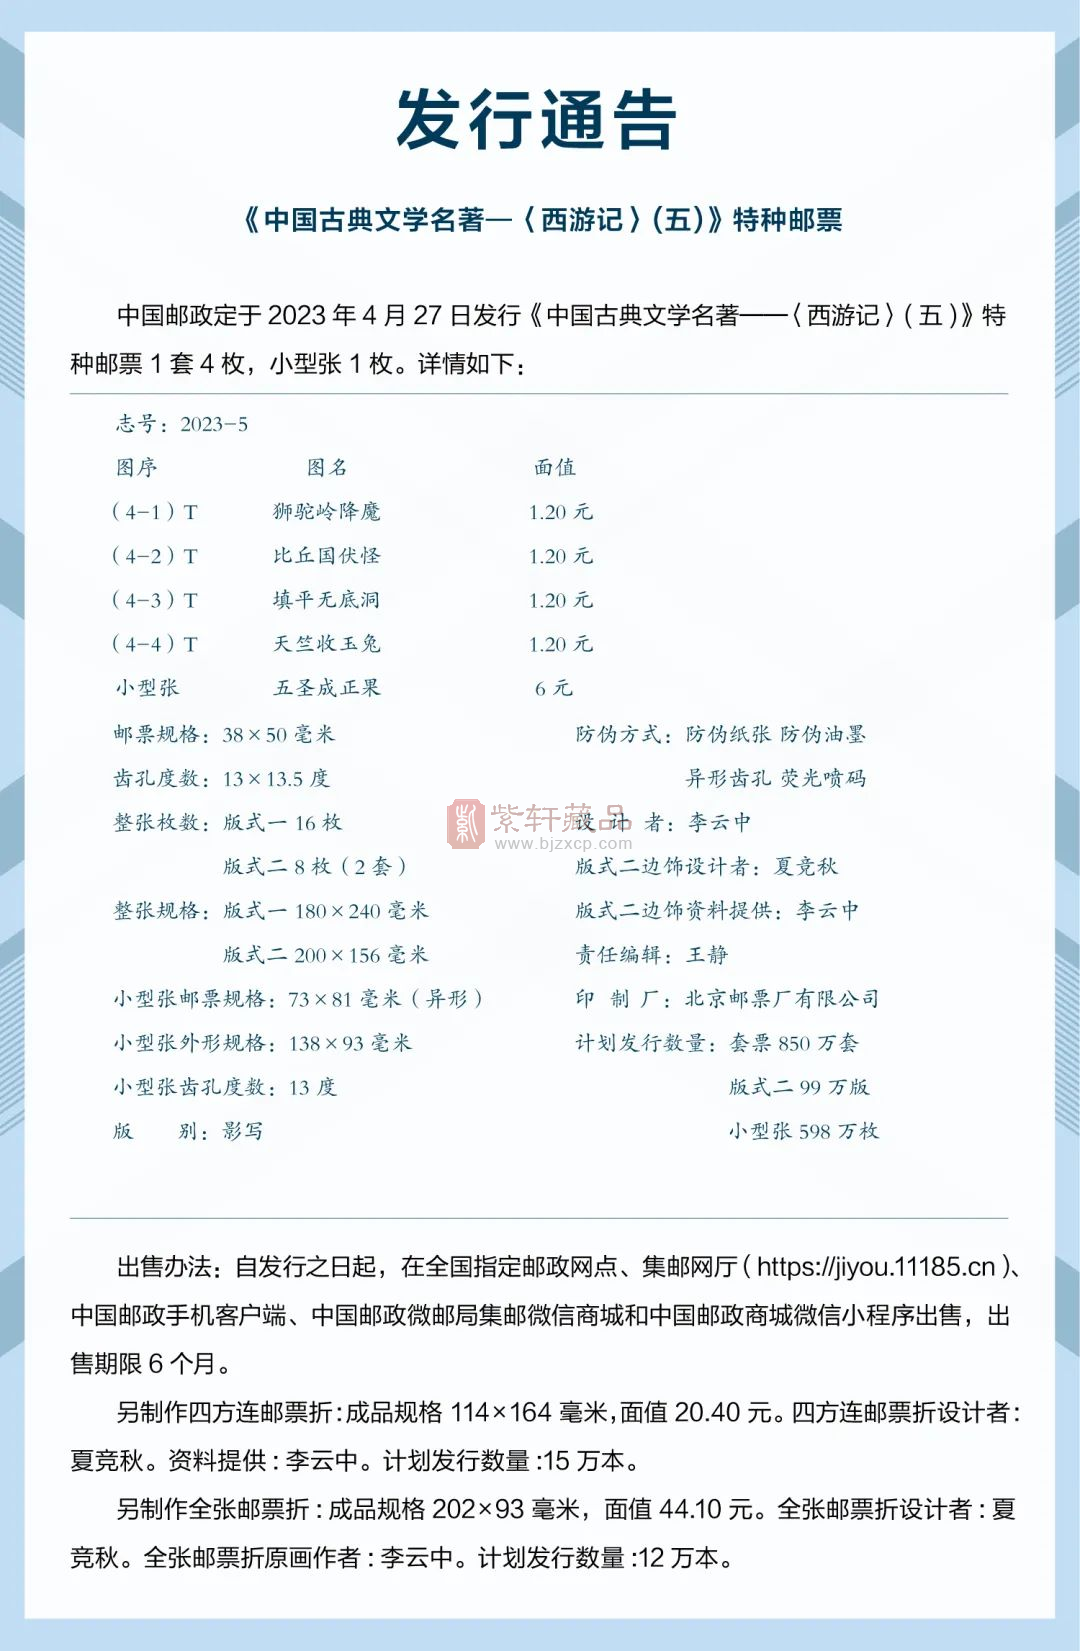 【发行公告】《中国古典文学名著——〈西游记〉（五）》 特种邮票即将发行